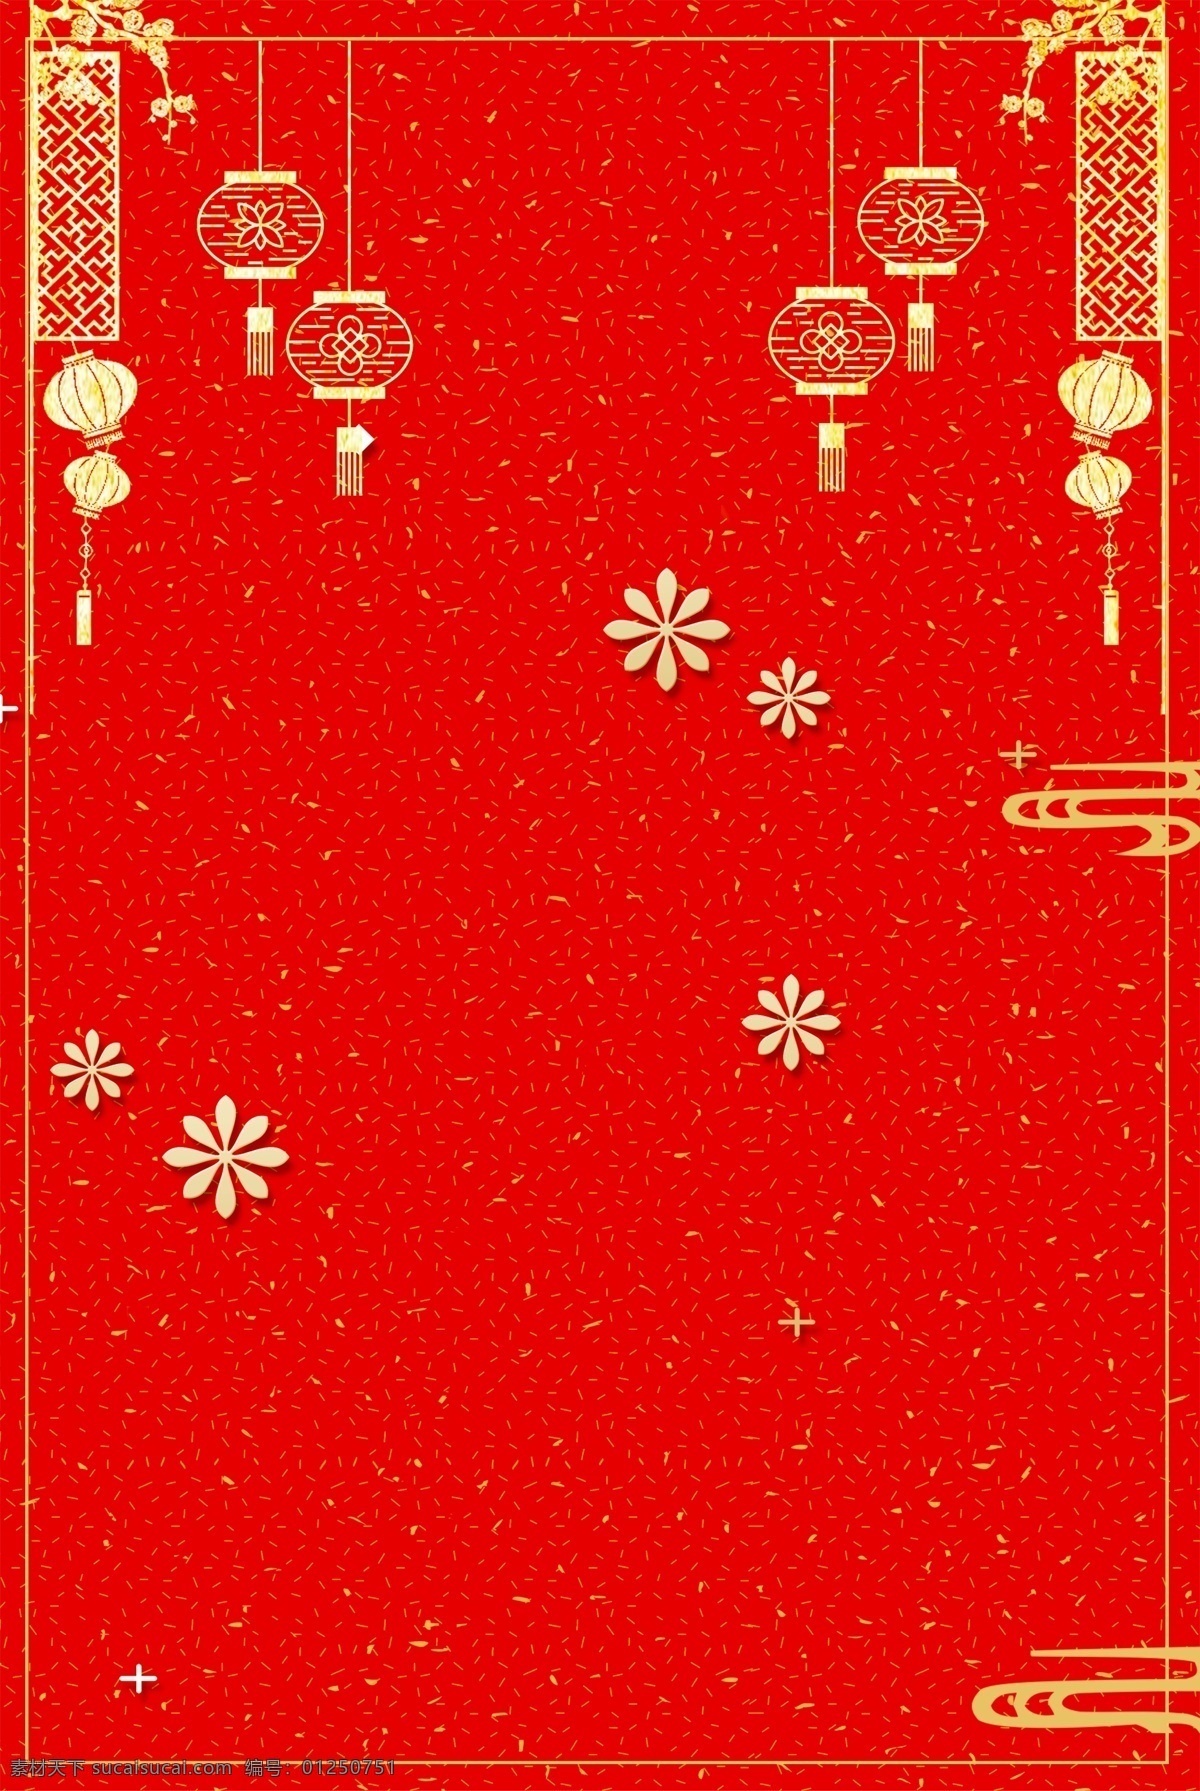 新年 签 烫金 中国 风 红色 海报 背景 新年签 过年 跨年 求签 新春 灯笼 中国风 春节